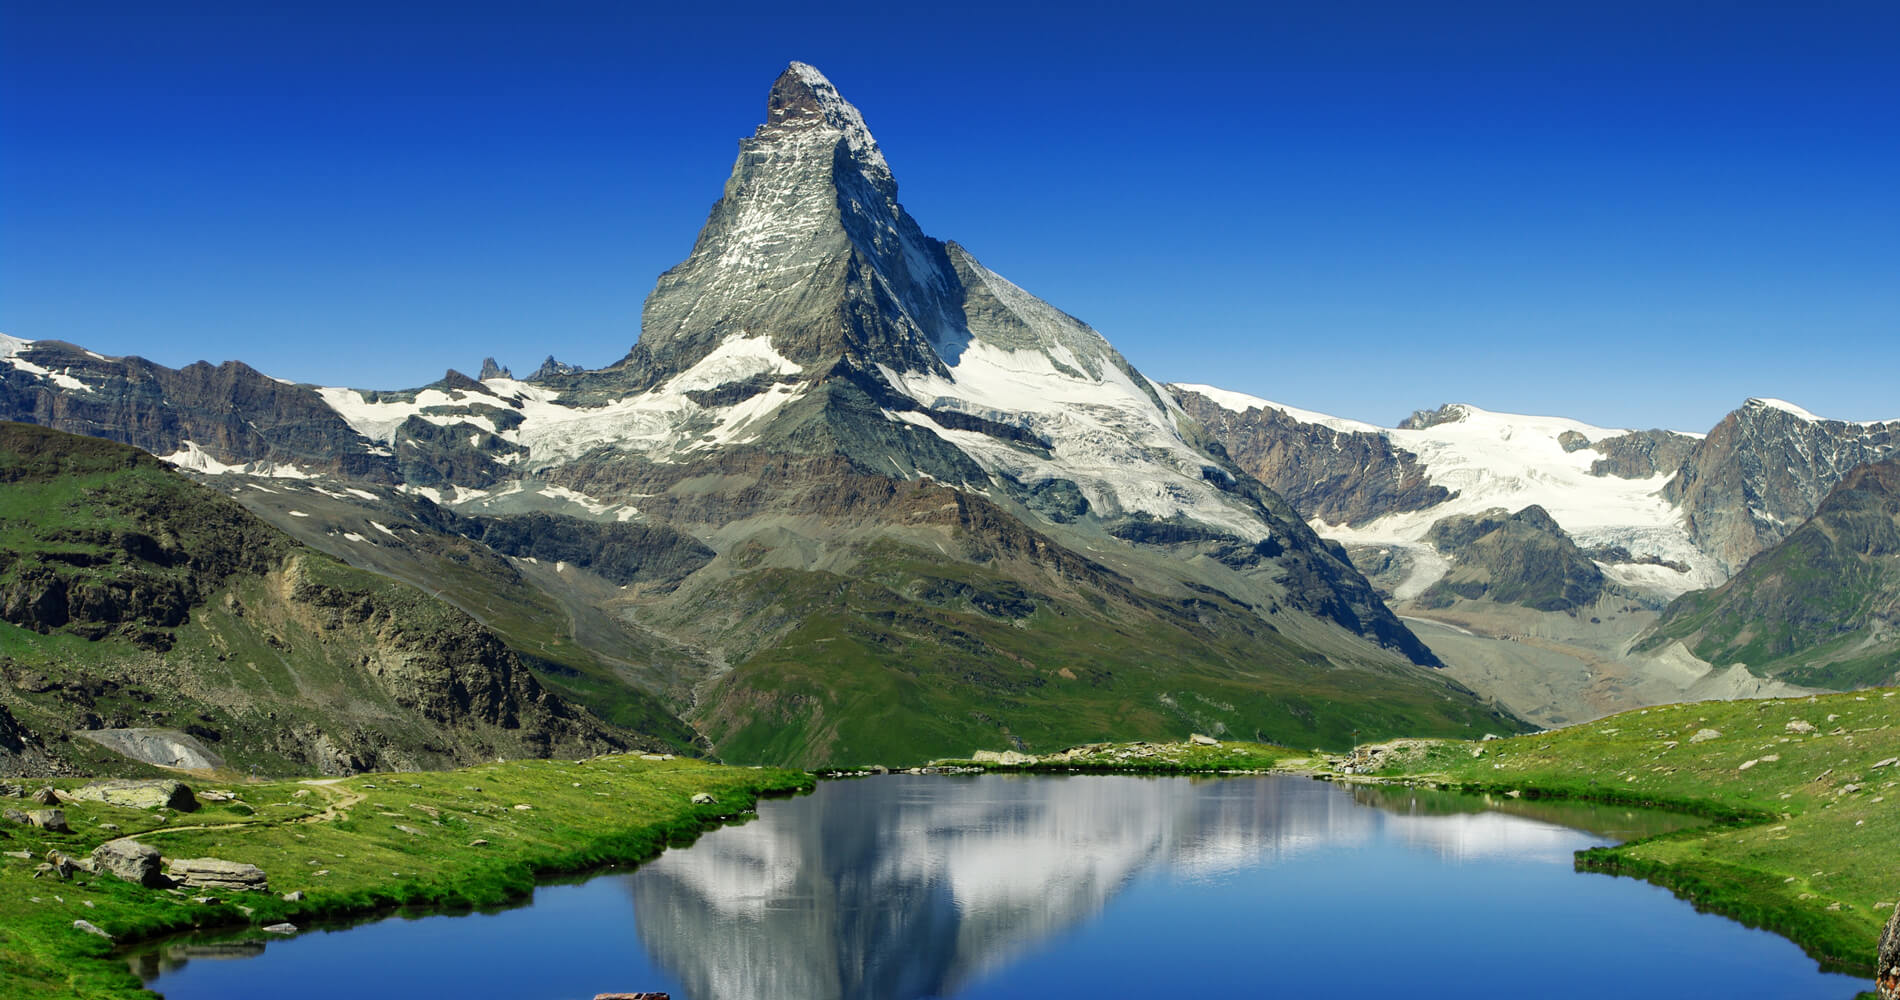 # Matterhorn